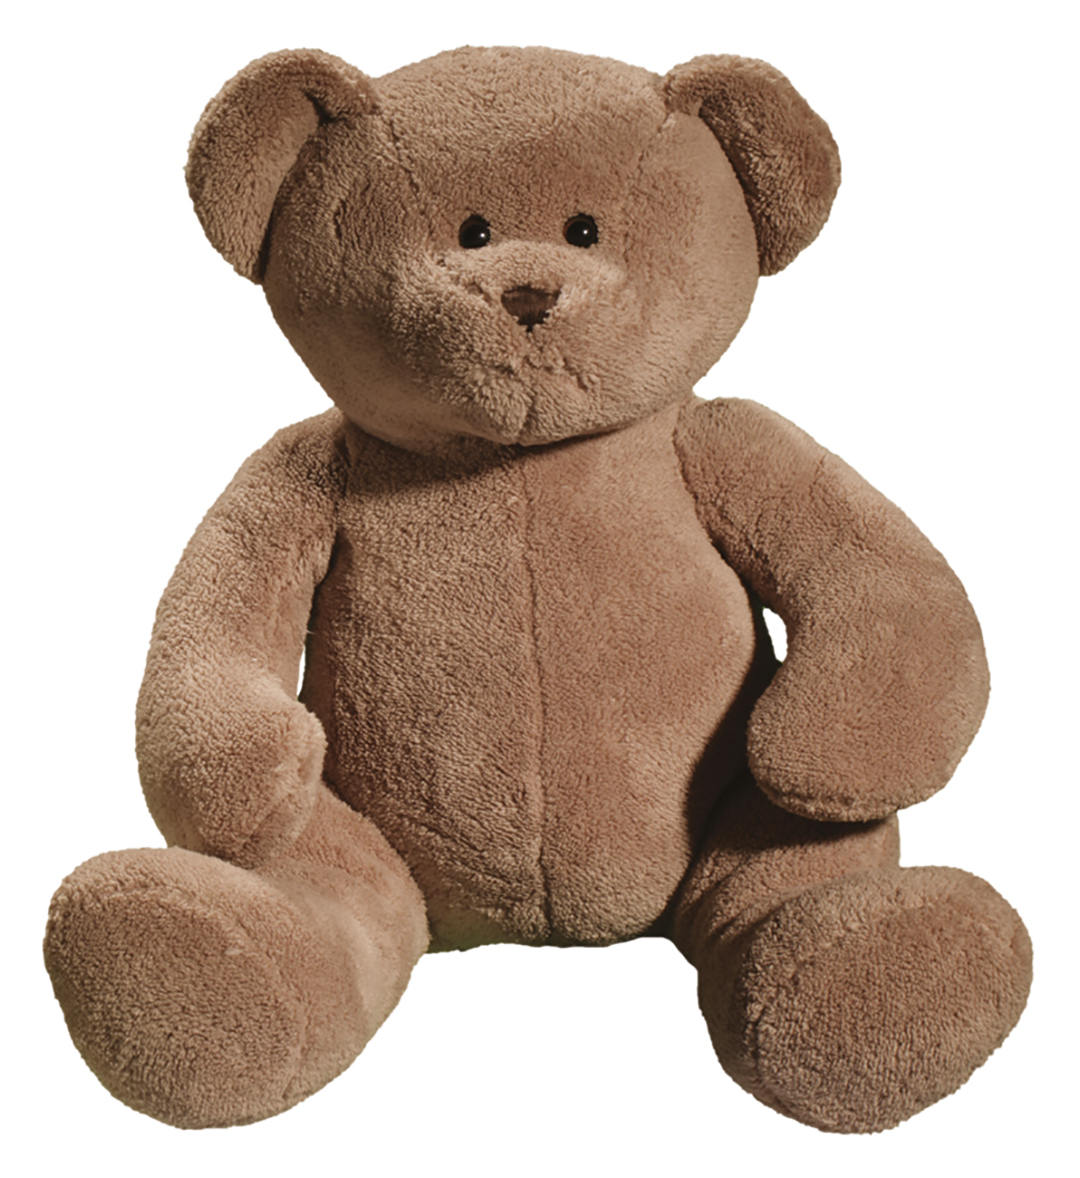 softplush teddy bear XL